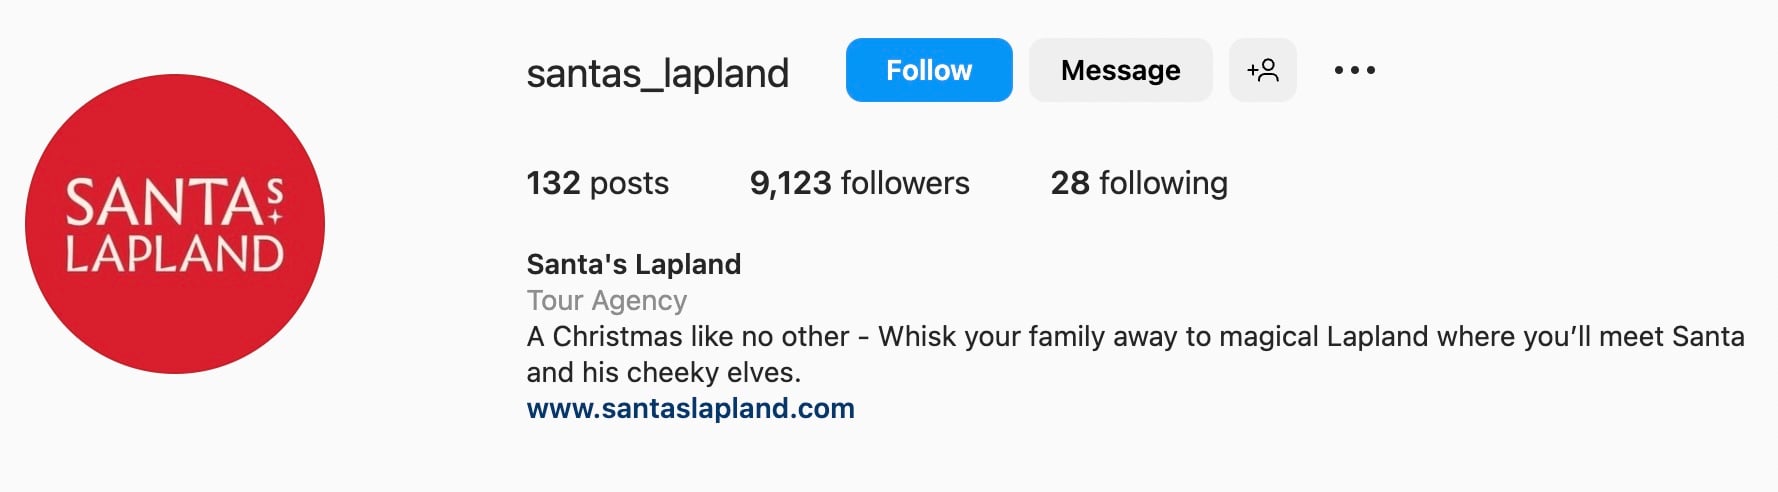 Good Instagram bio ideas for travel, santas lapland